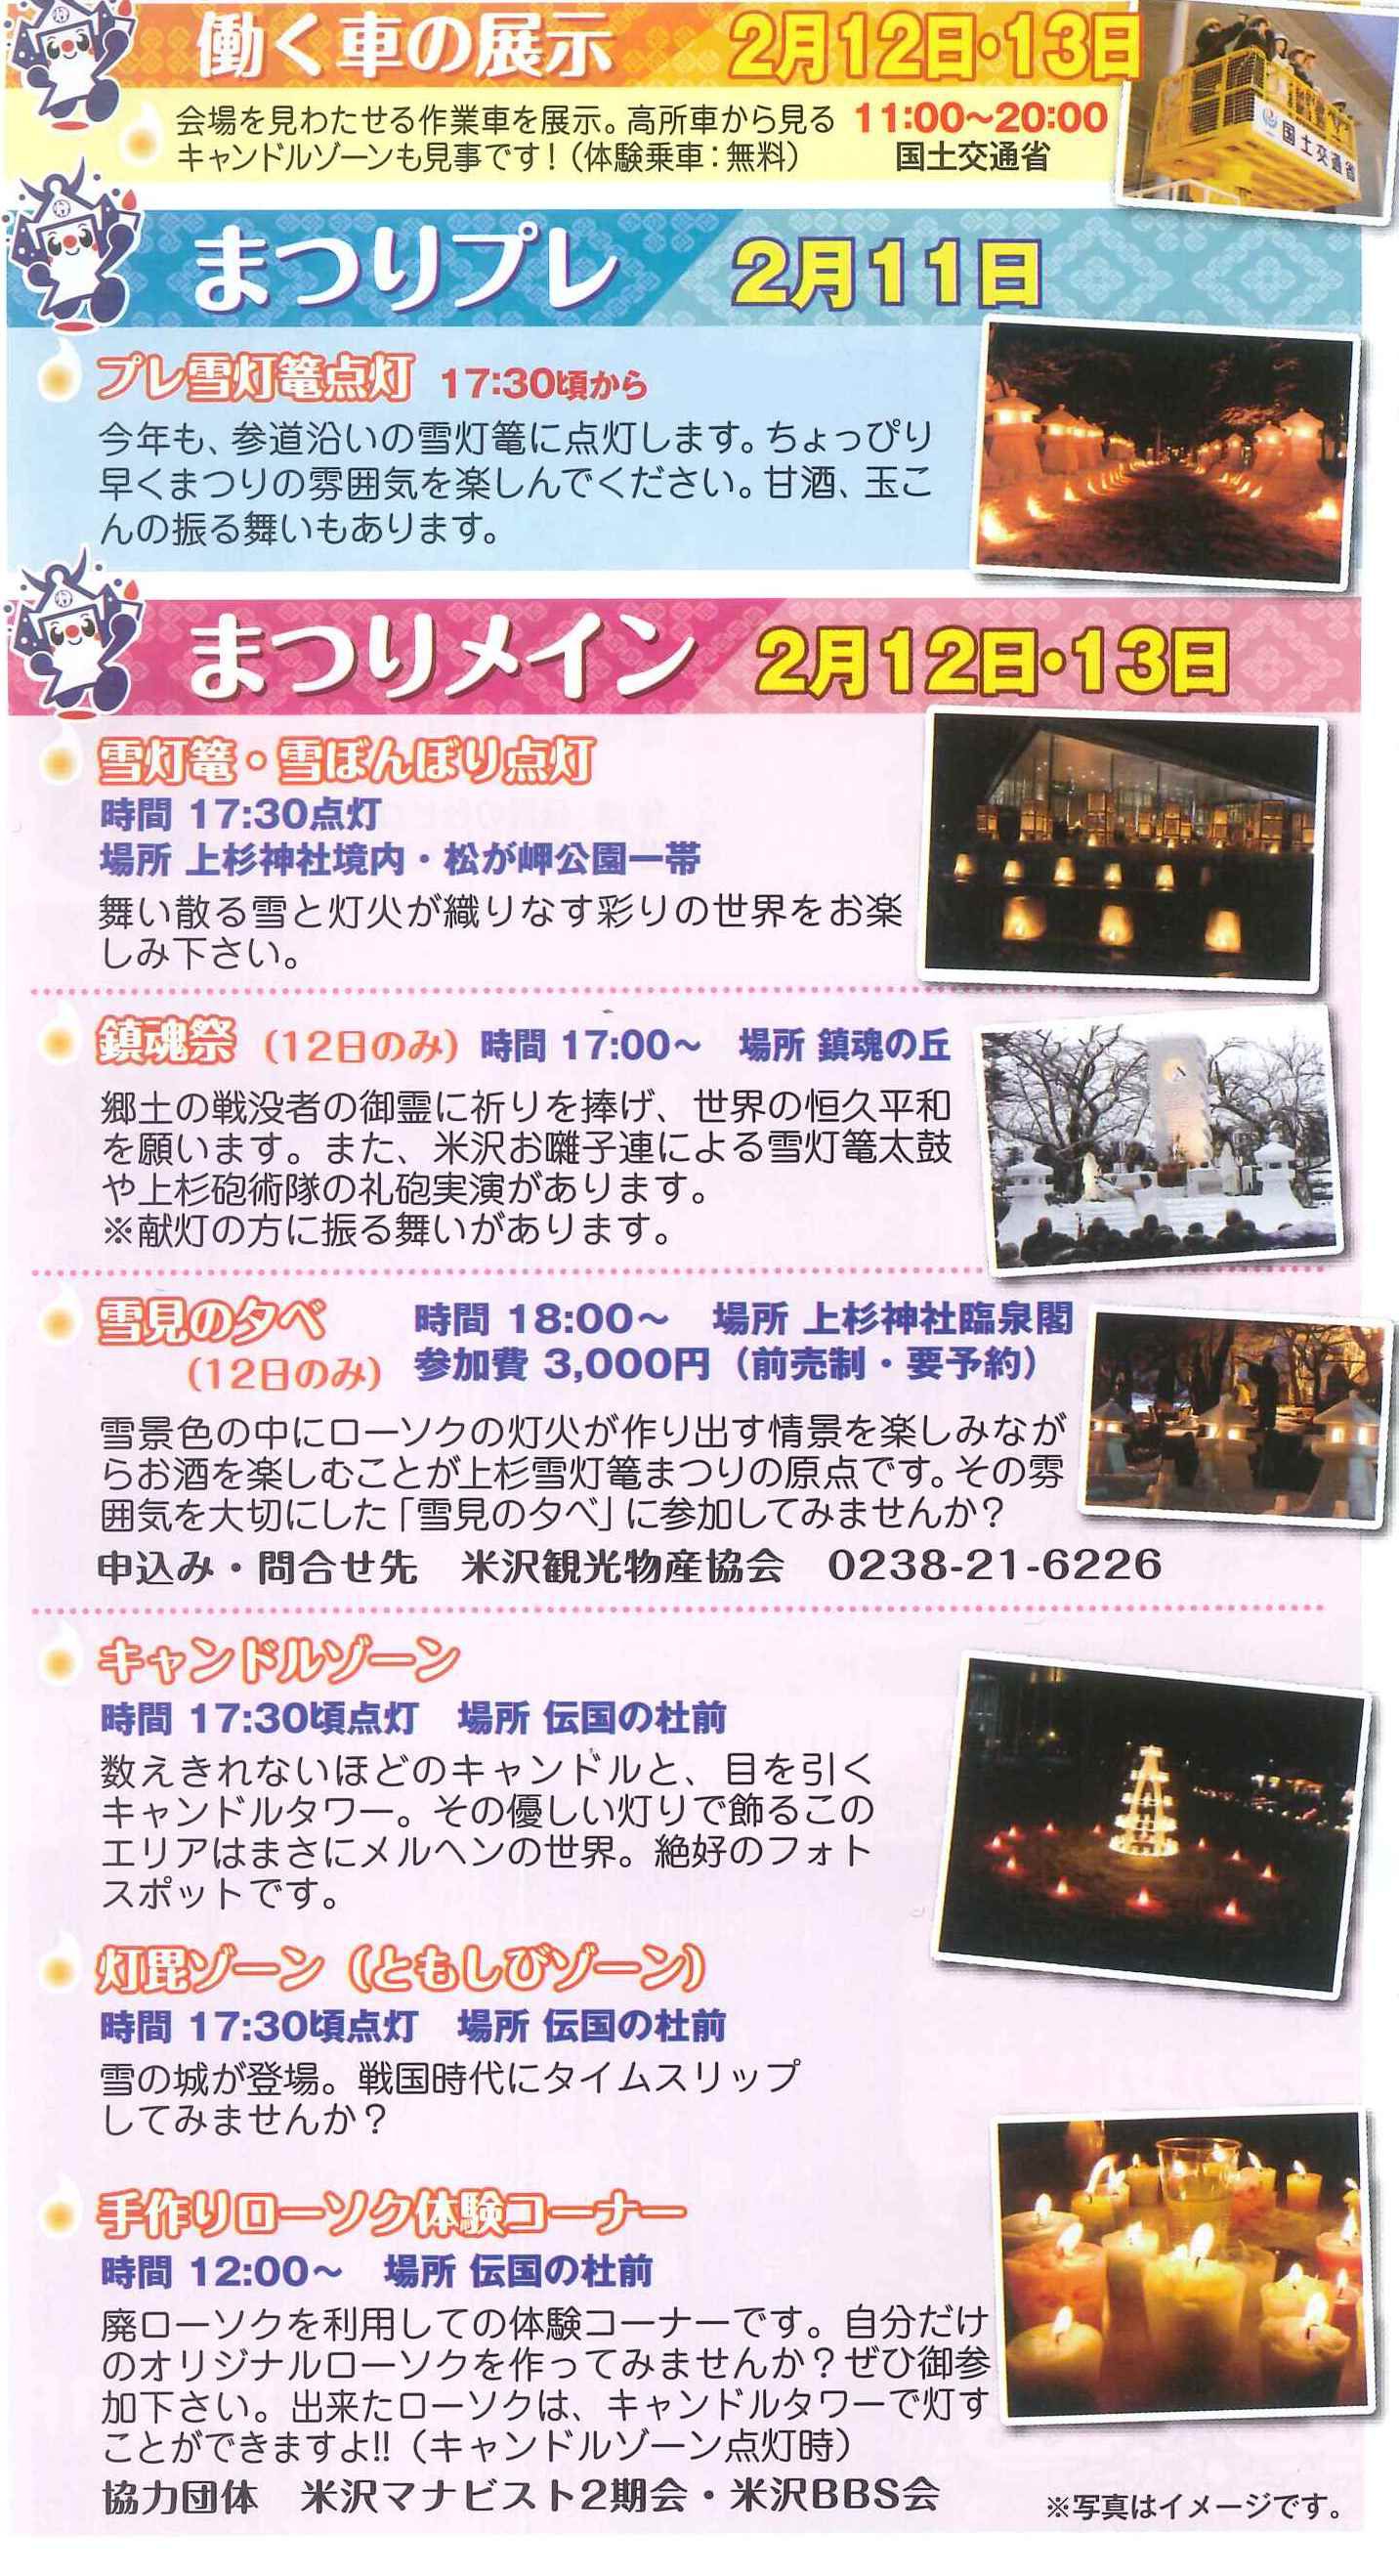 【平成23年の情報】第34回上杉雪灯篭まつりメインスケジュール